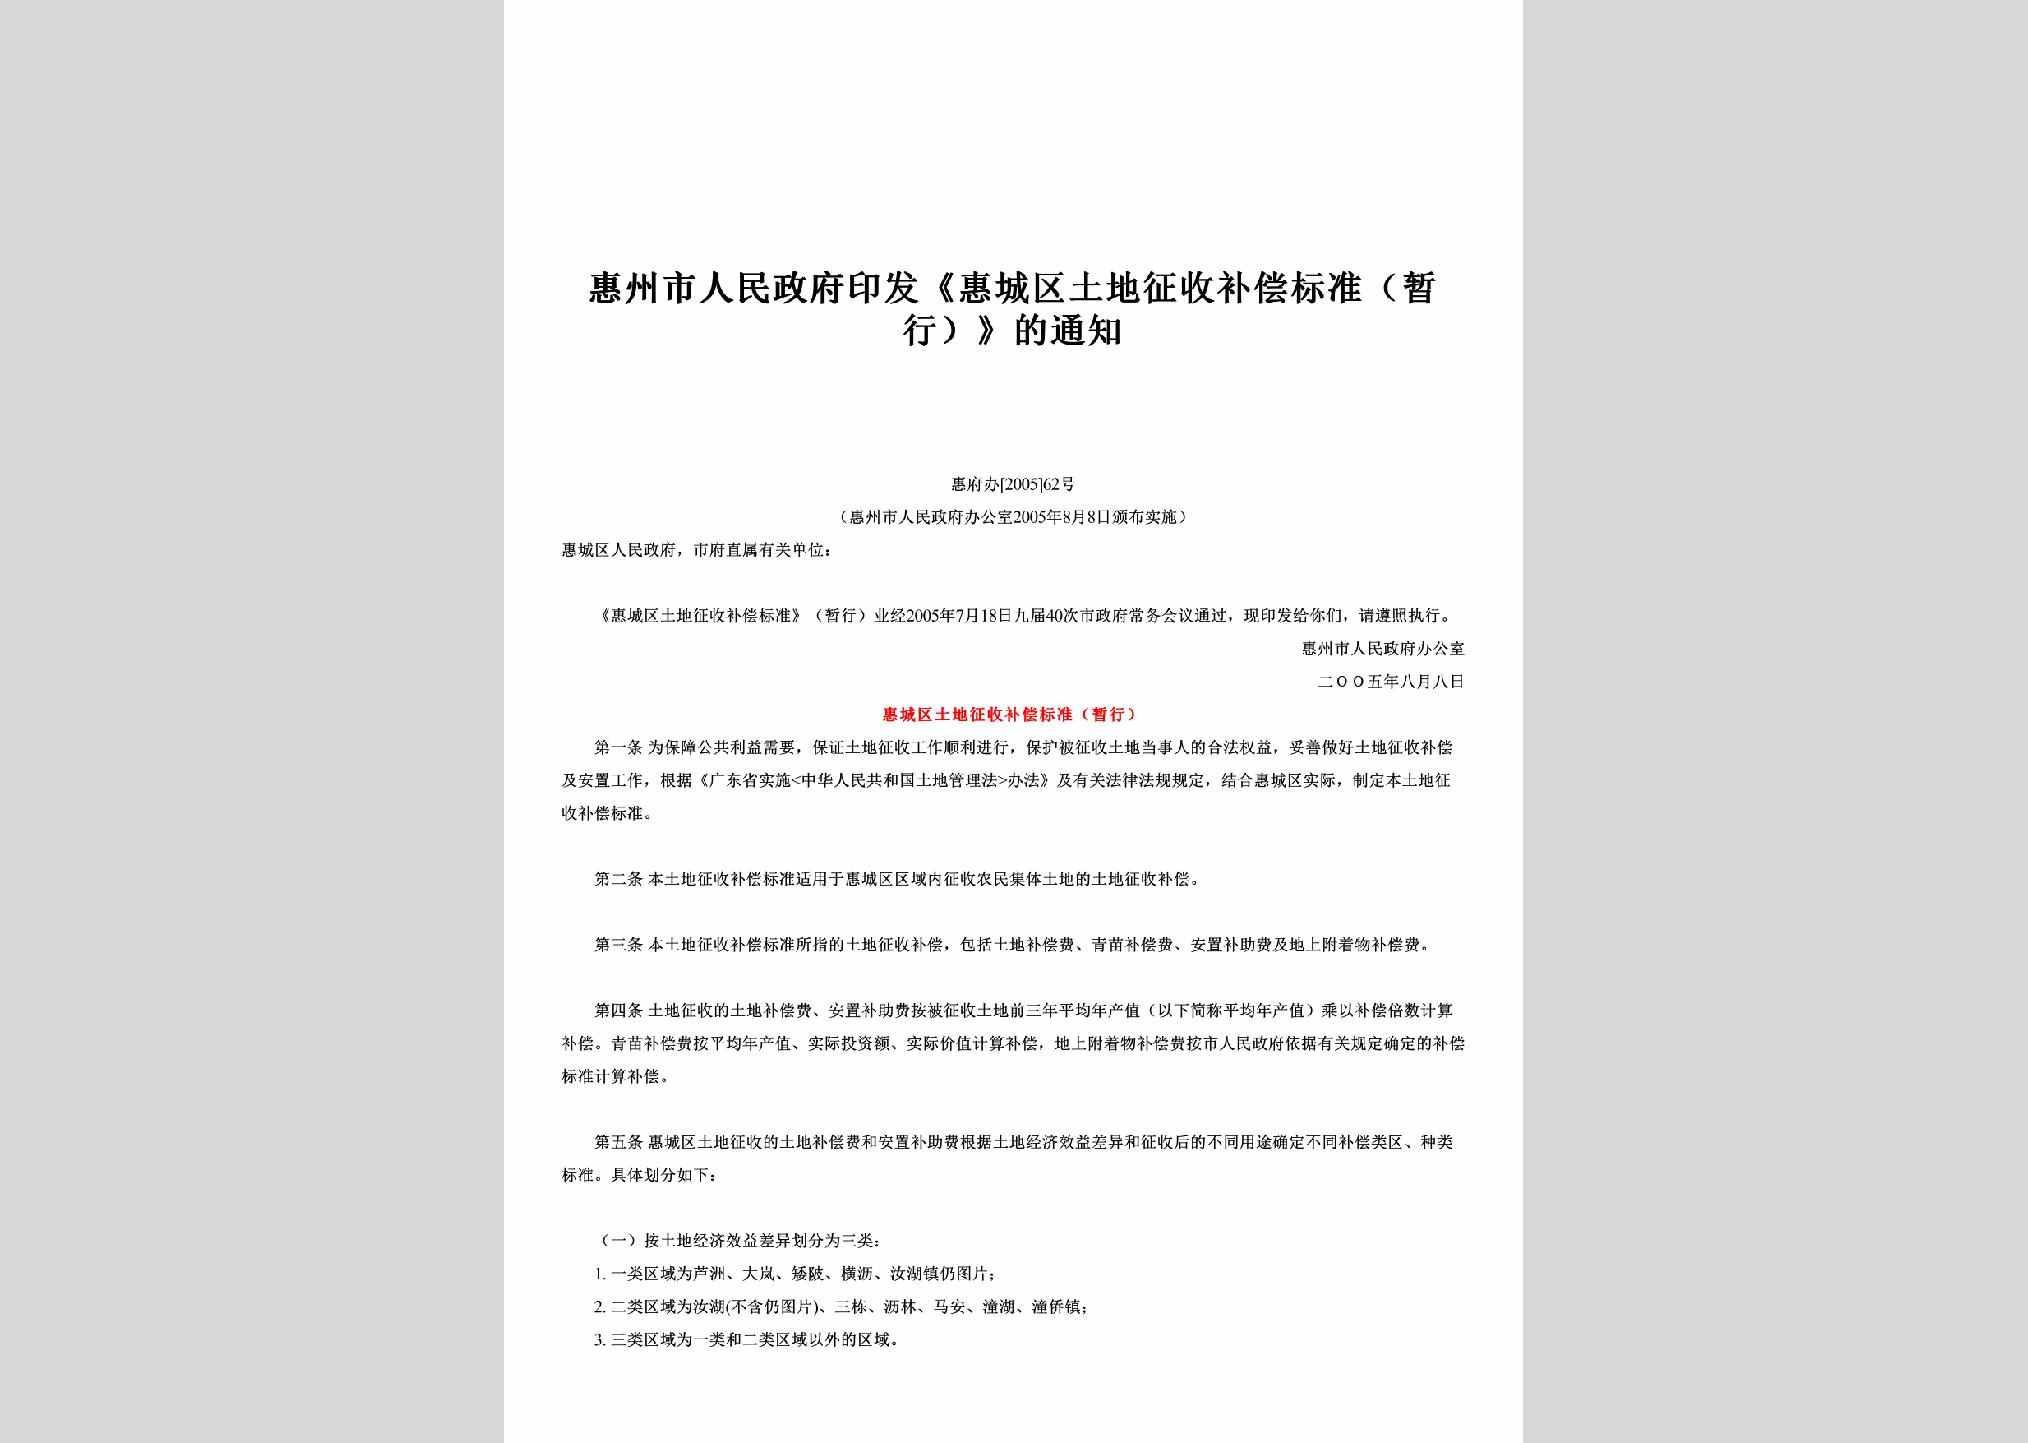 惠府办[2005]62号：印发《惠城区土地征收补偿标准（暂行）》的通知